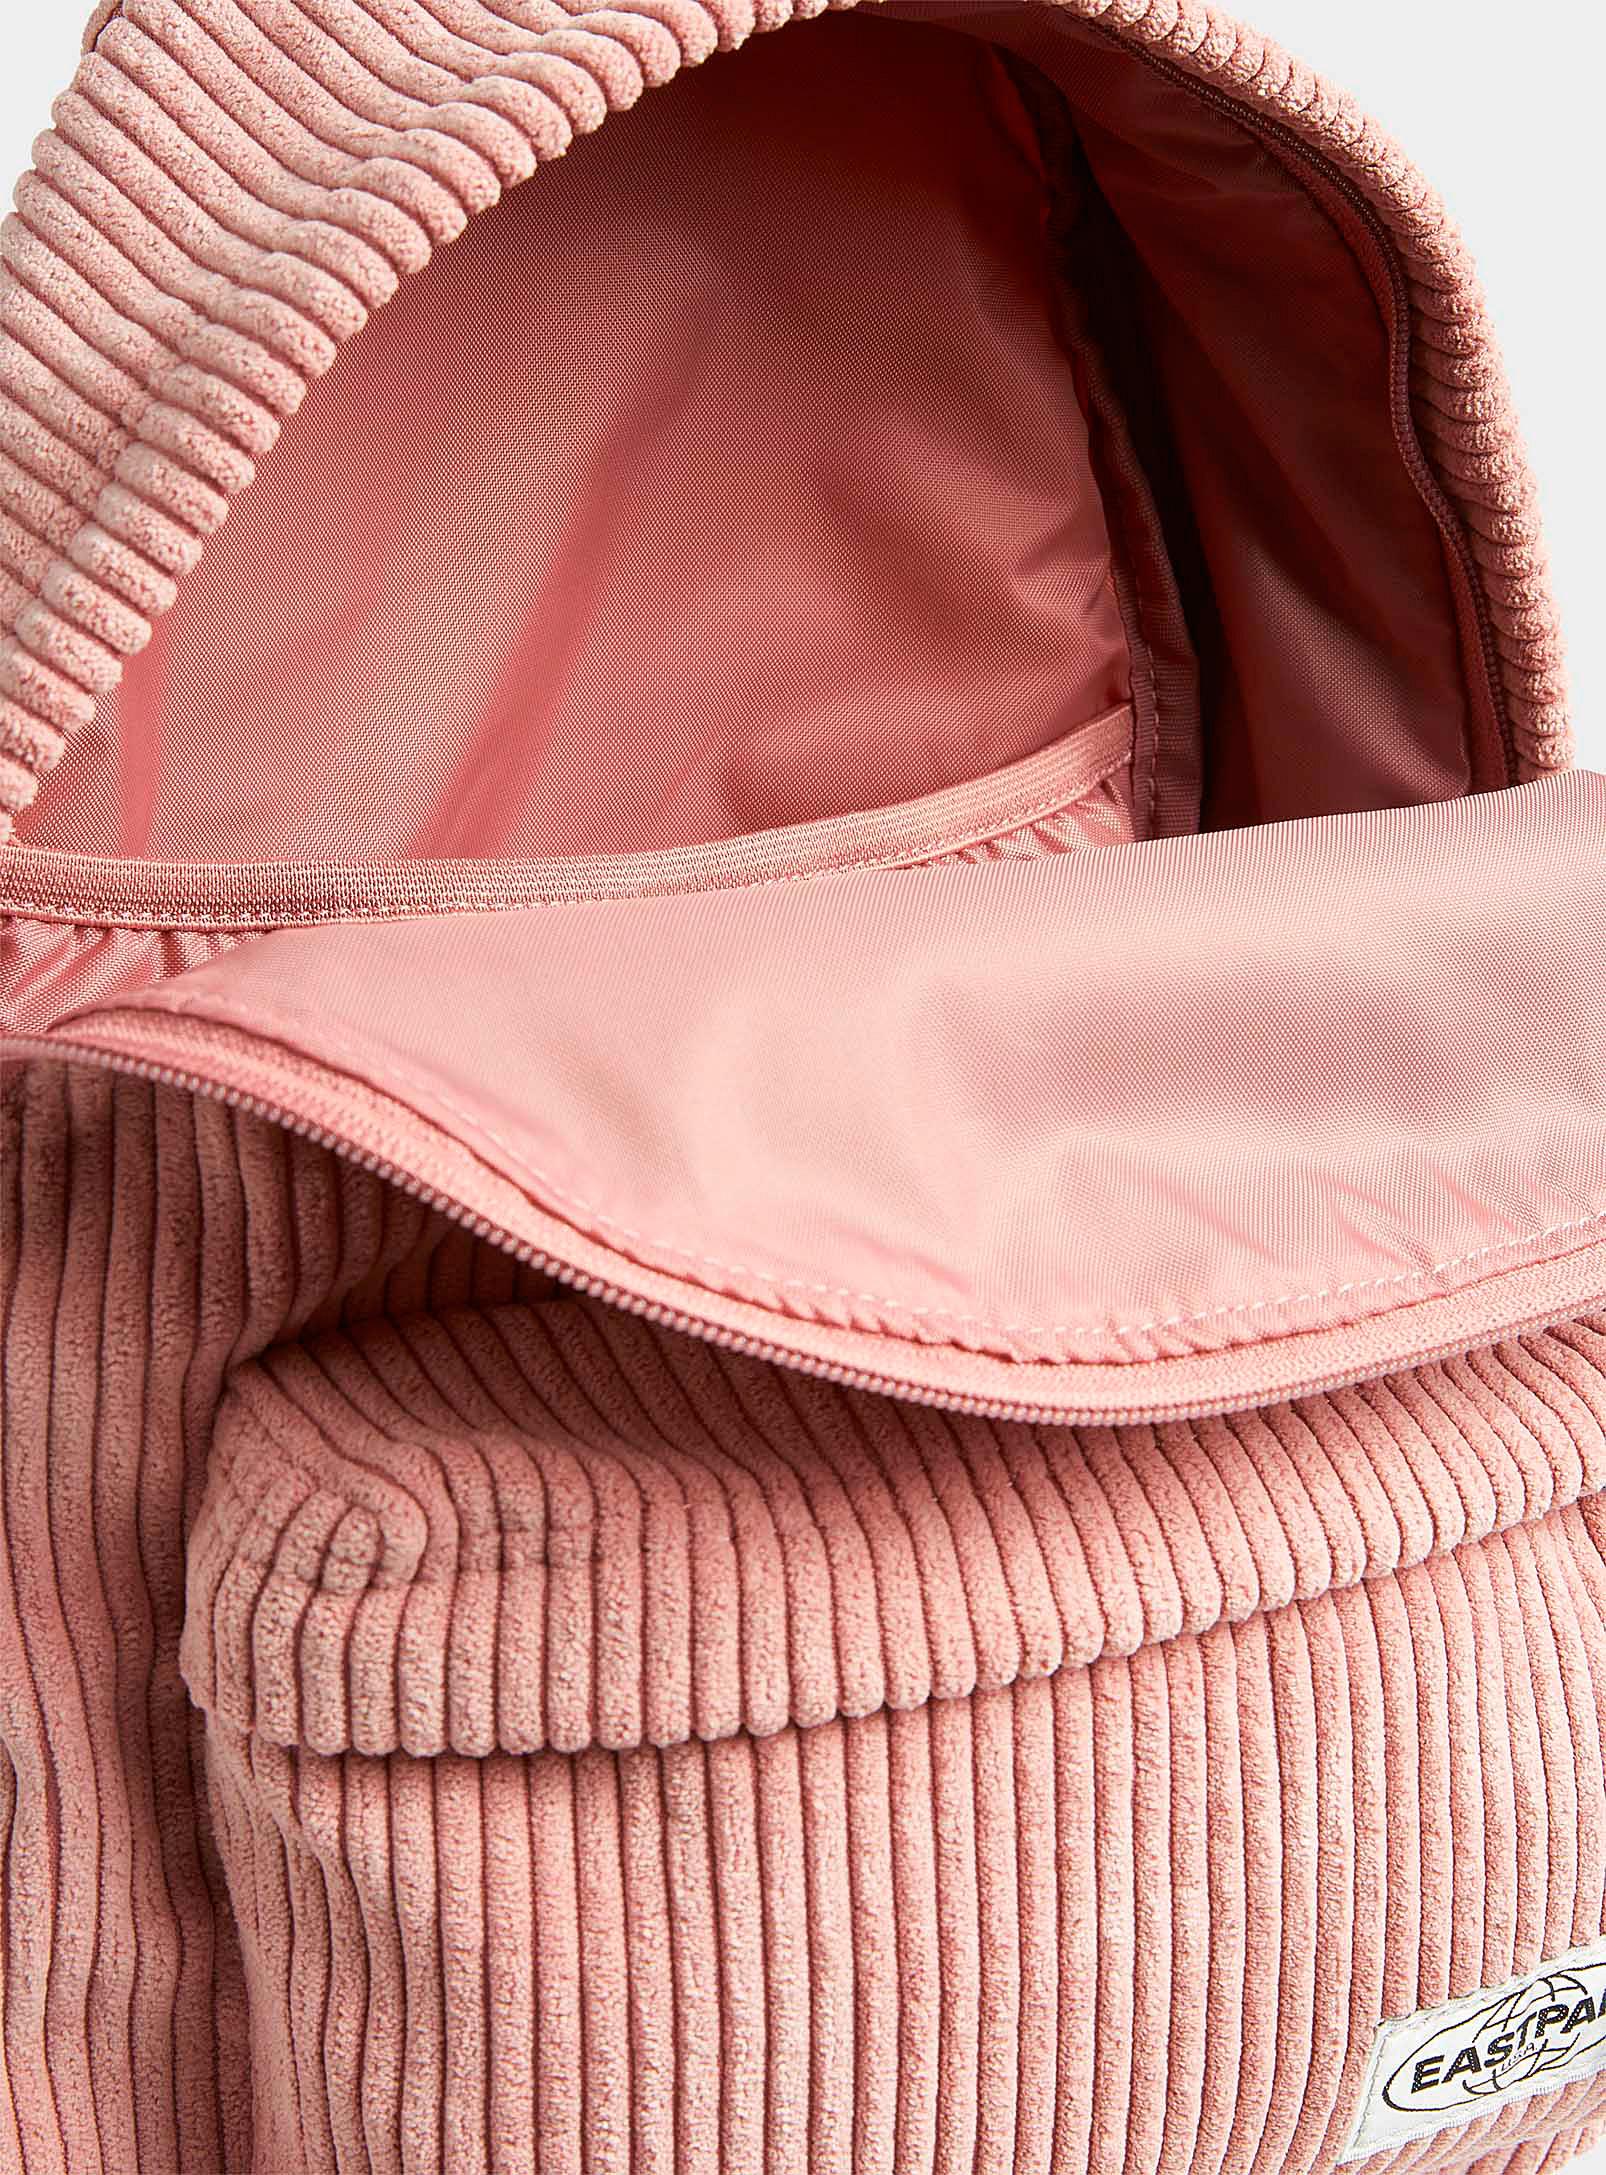 Eastpak Orbit Corduroy Backpack in Pink | Lyst